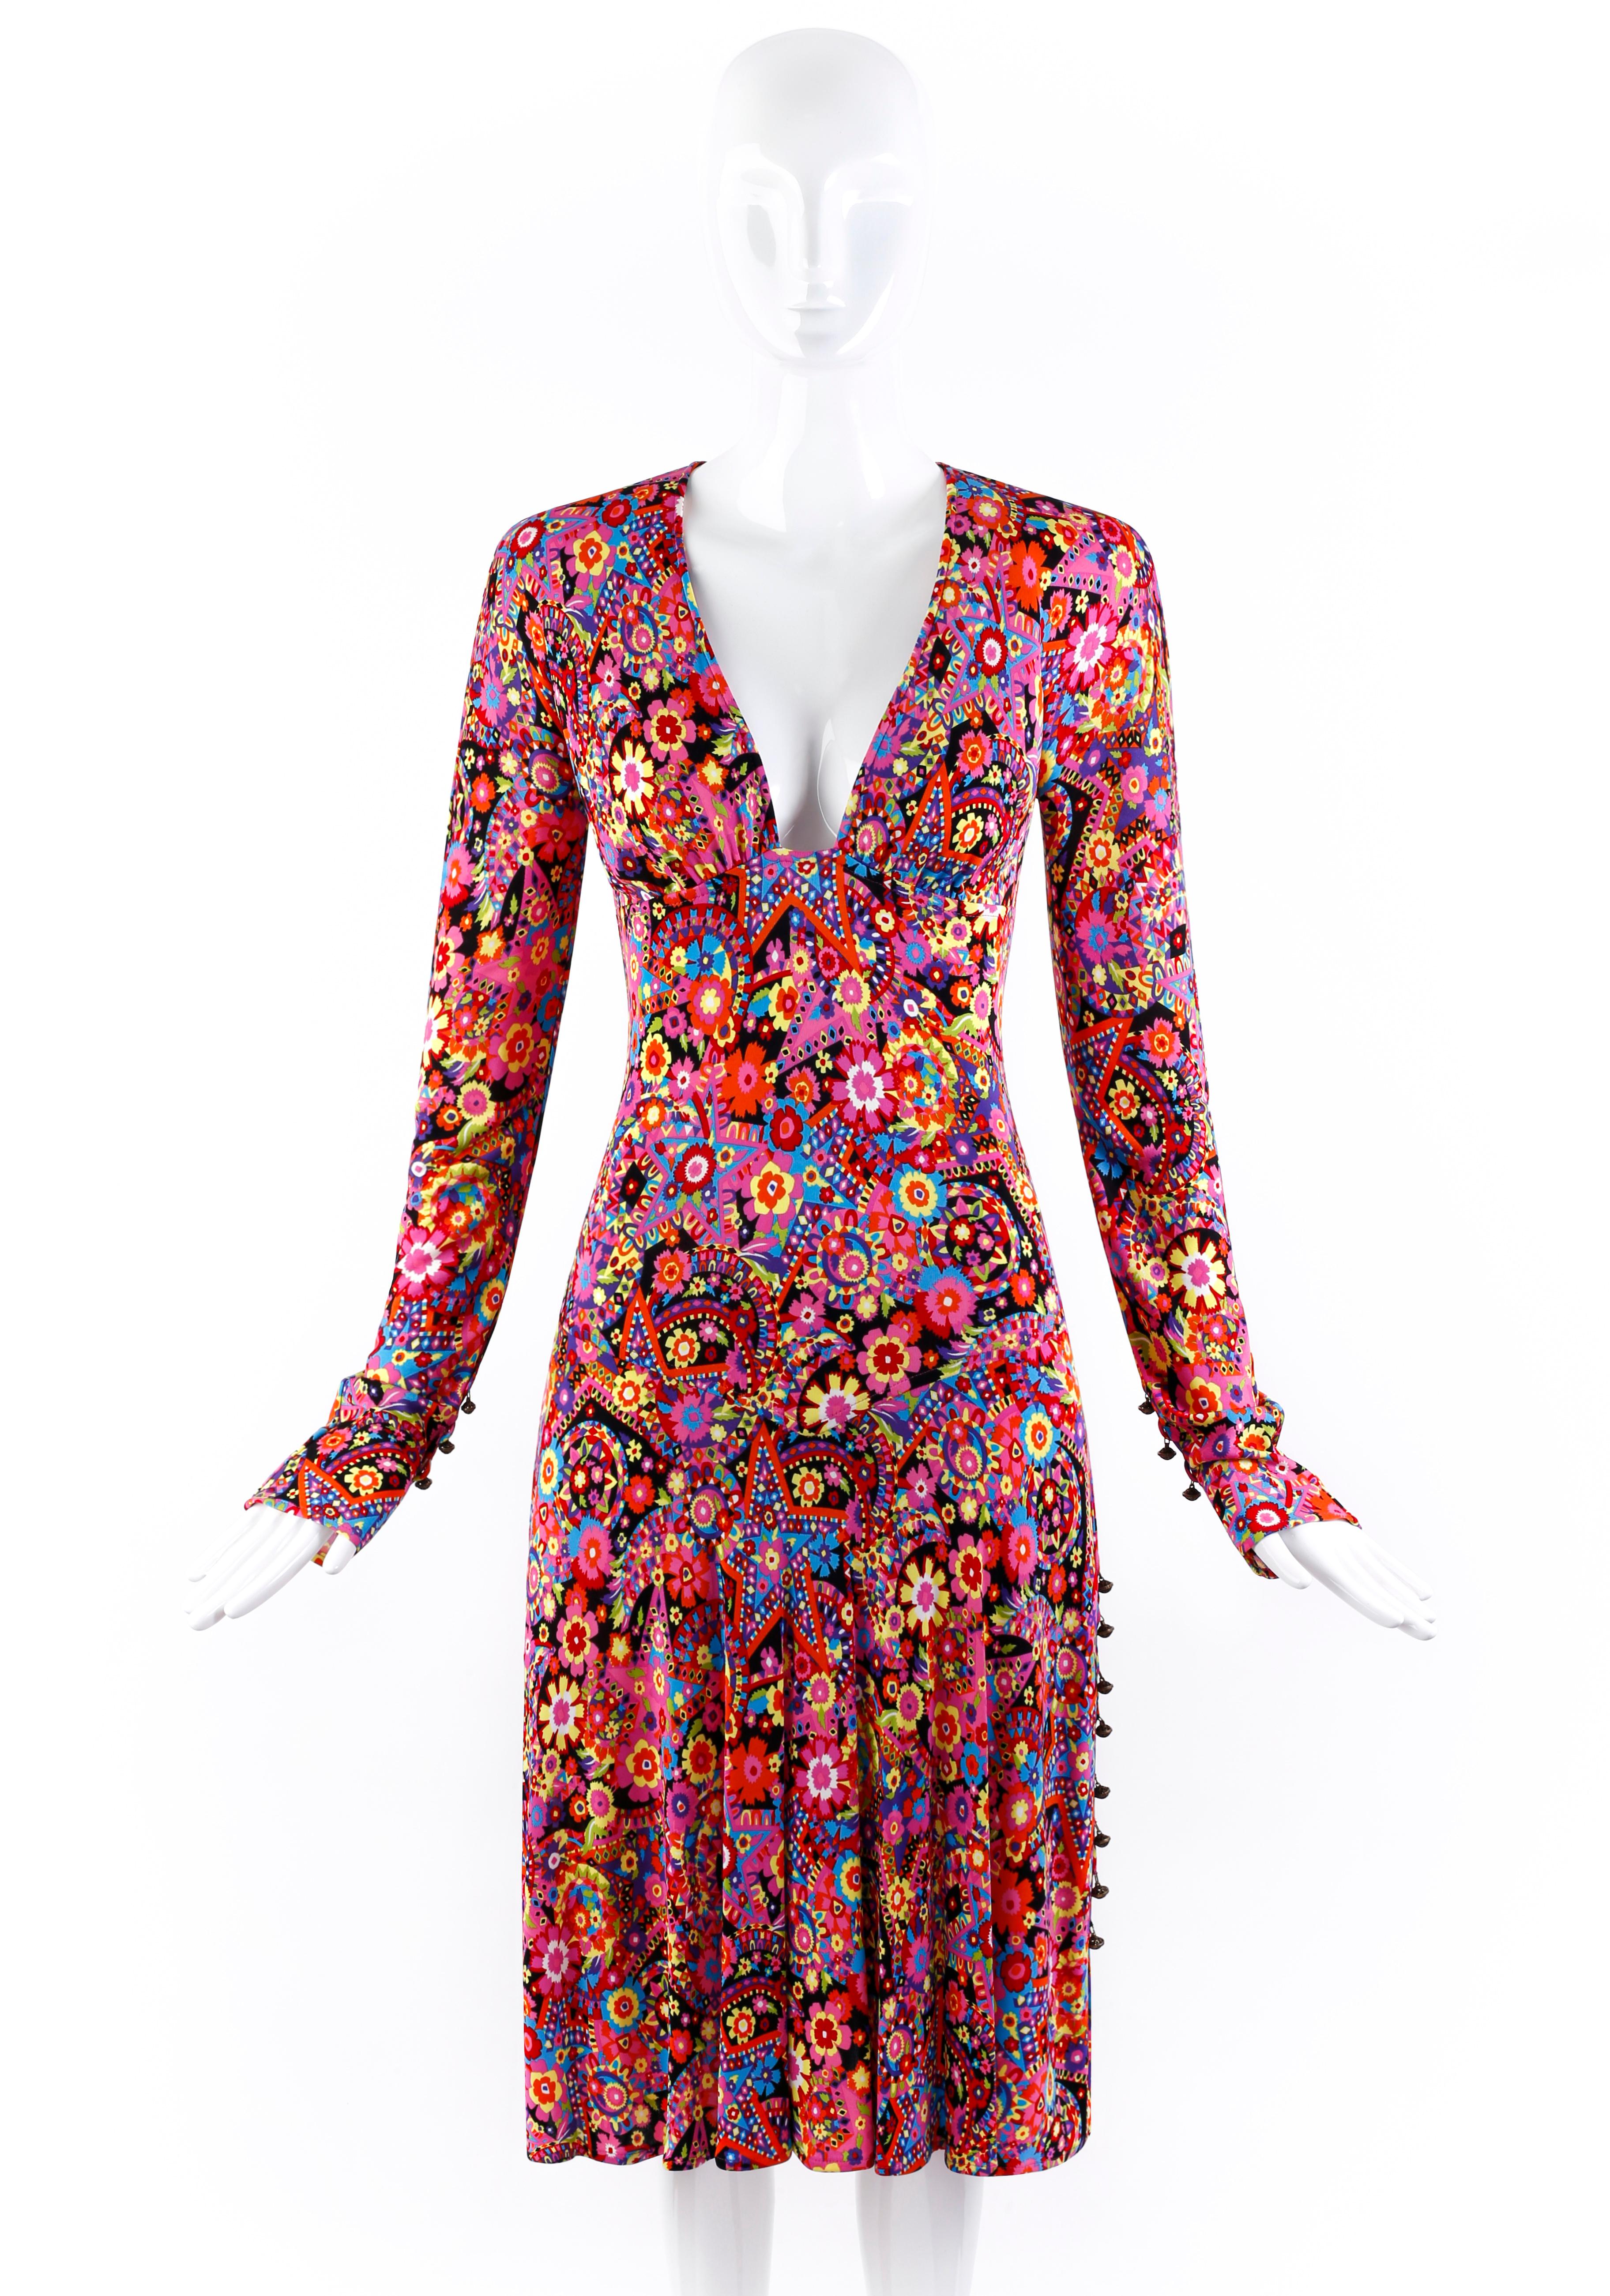 Entworfen von Donatella Versace für die Herbst/Winter-Kollektion 2002. Dieses Kleidungsstück des Labels Gianni Versace Couture zeigt ein mehrfarbiges, psychedelisches Blumen- und Sternenmuster, das in den Modestrecken der Saison zu sehen war. Tief